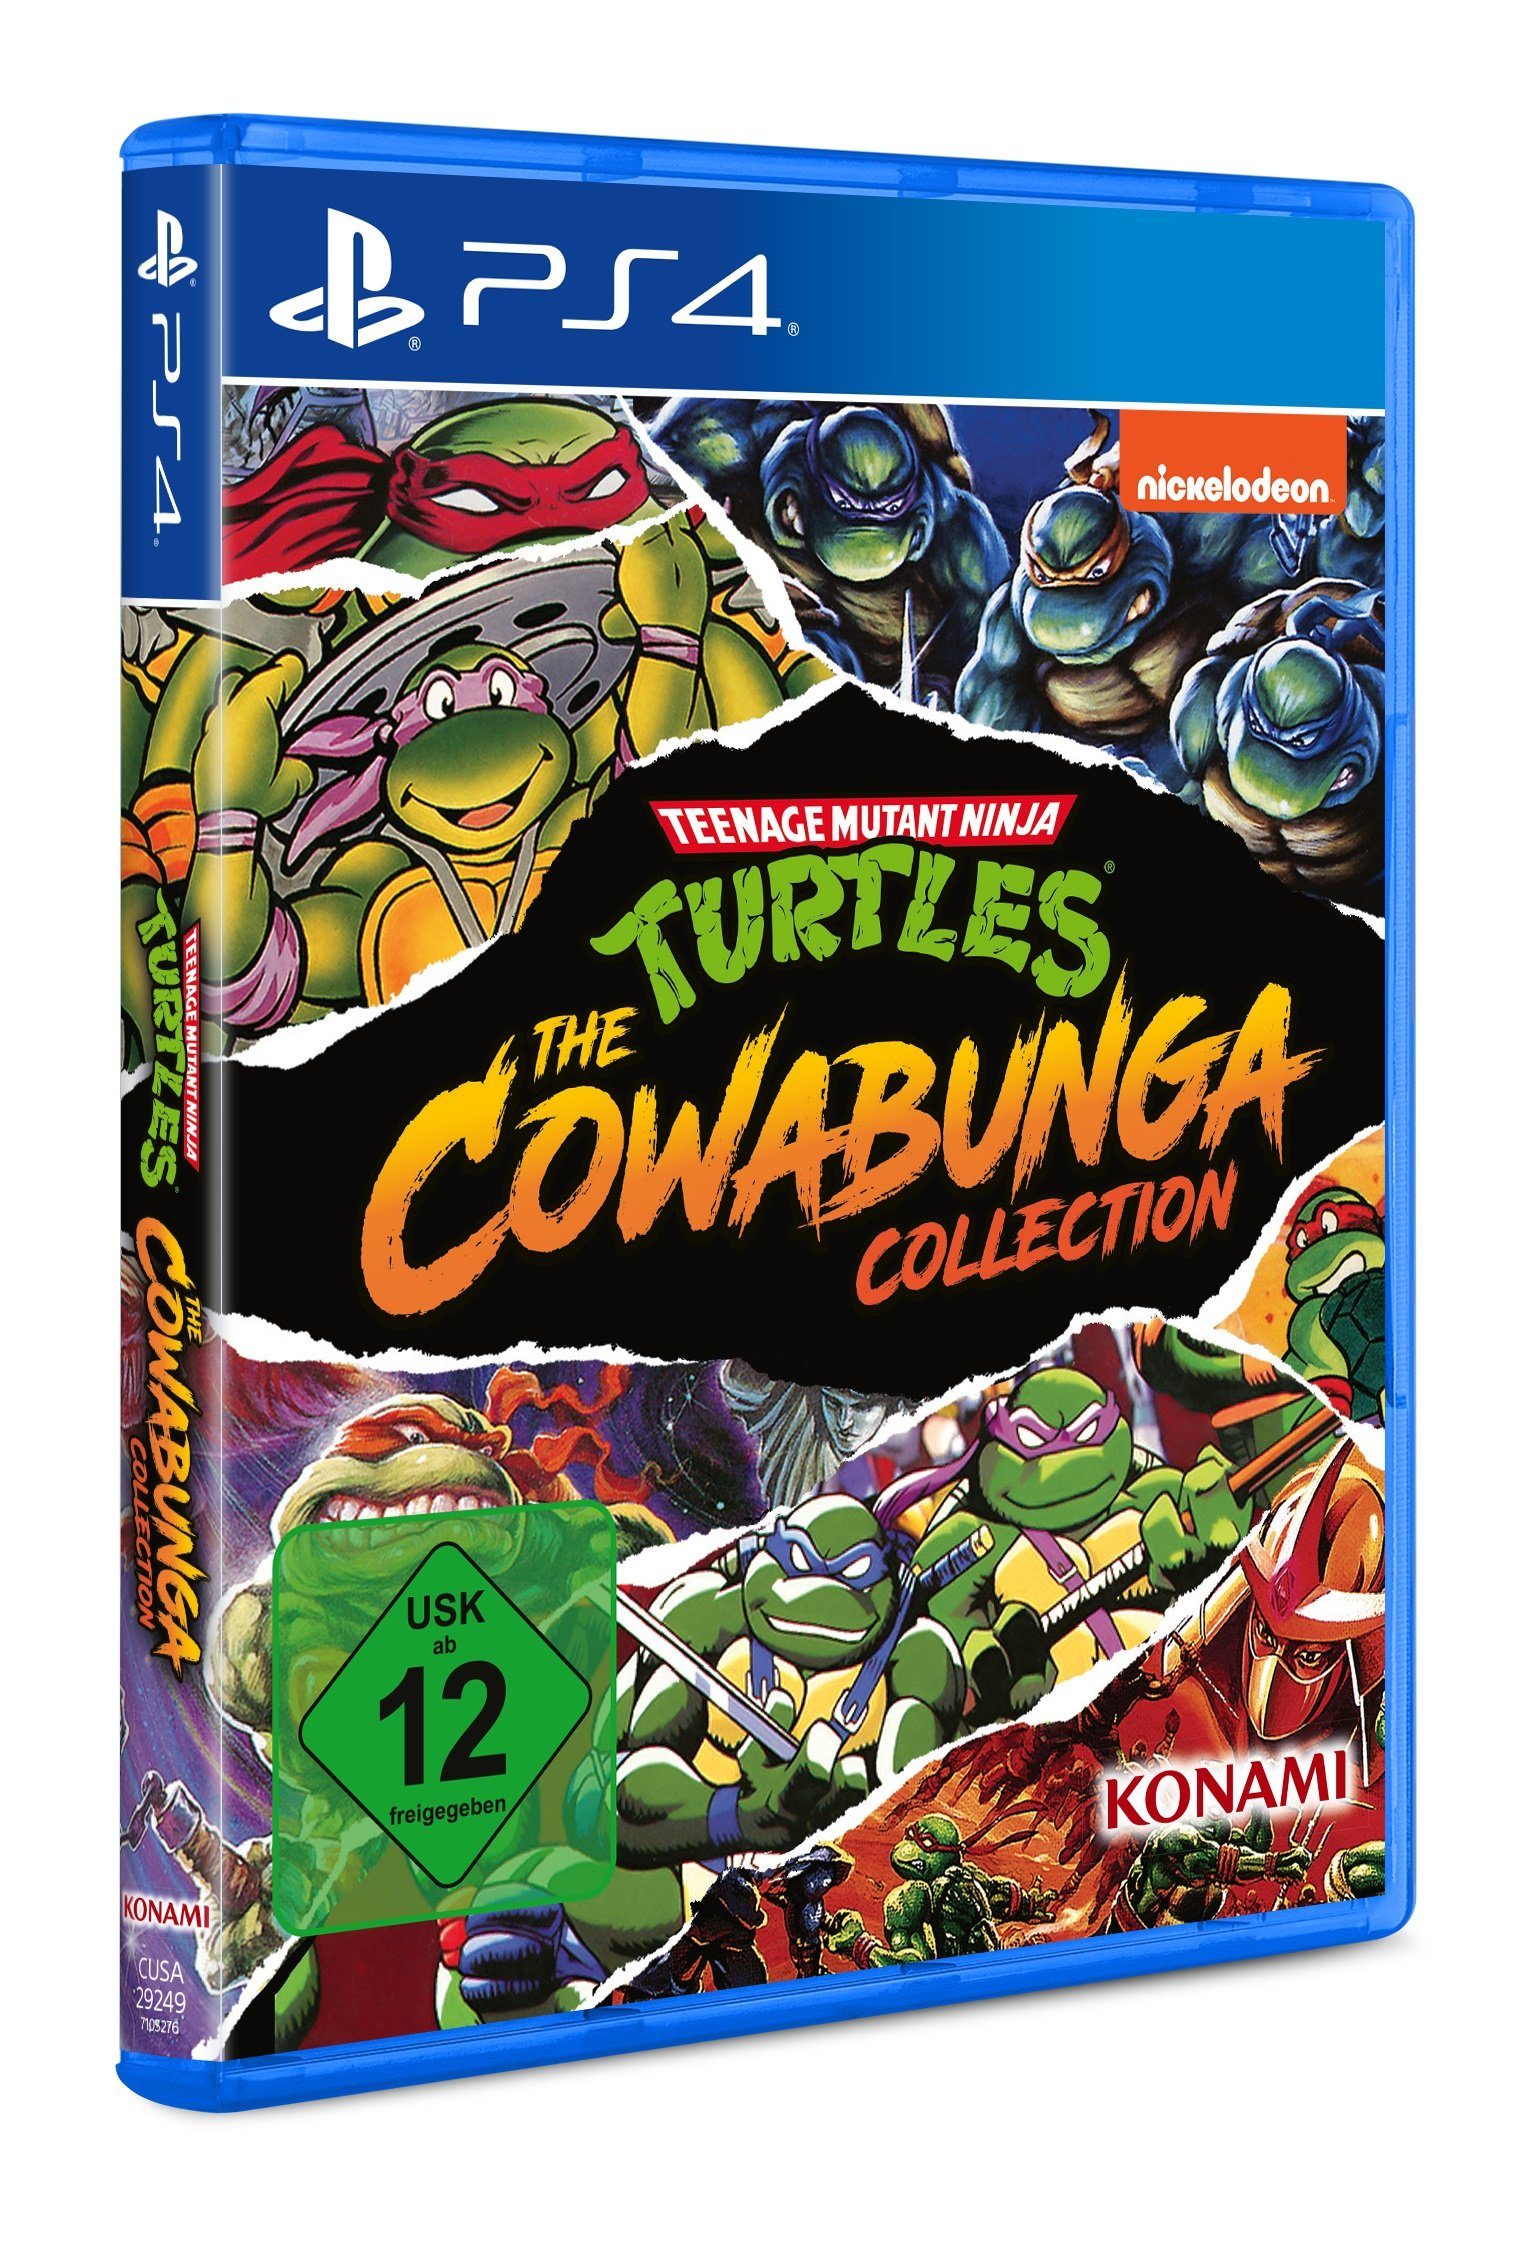 Konami Teenage Mutant Ninja Turtles PlayStation - Cowabunga The 4 Collection